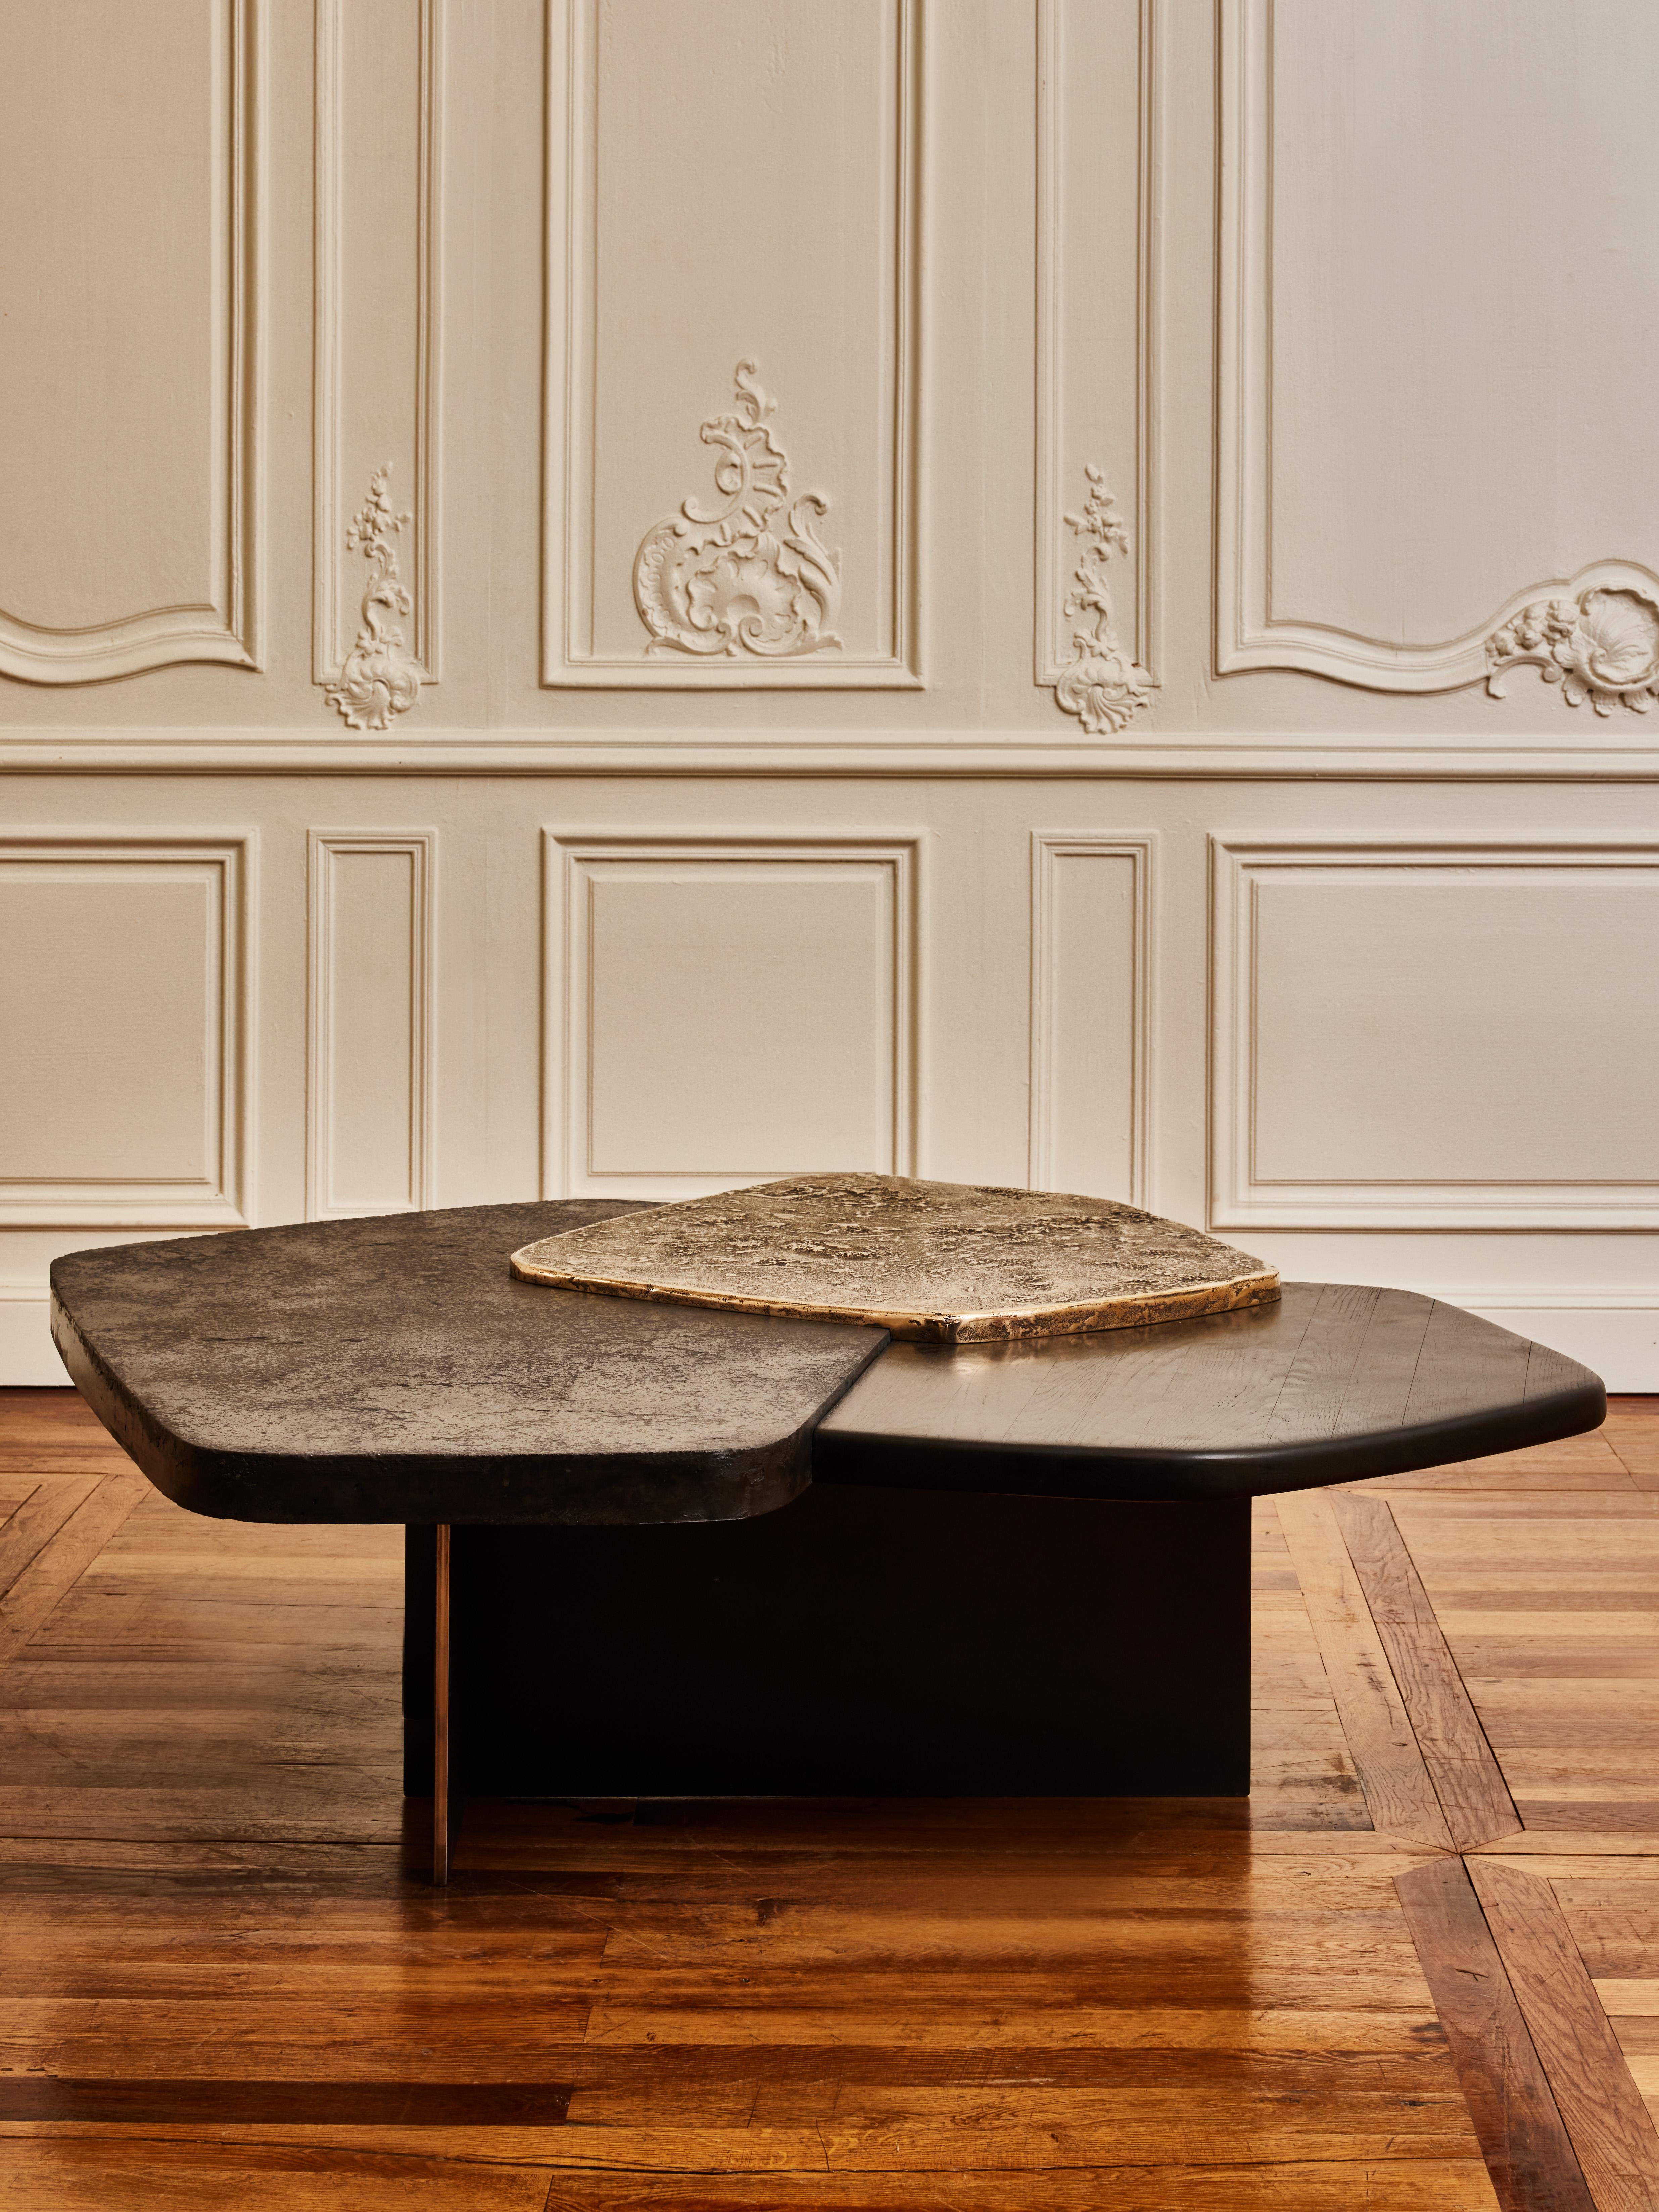 Superbe table basse en béton ciré, bois brûlé et bronze patiné.
Pièce numérotée et signée par l'artiste Erwan Boulloud.
France, 2023.

